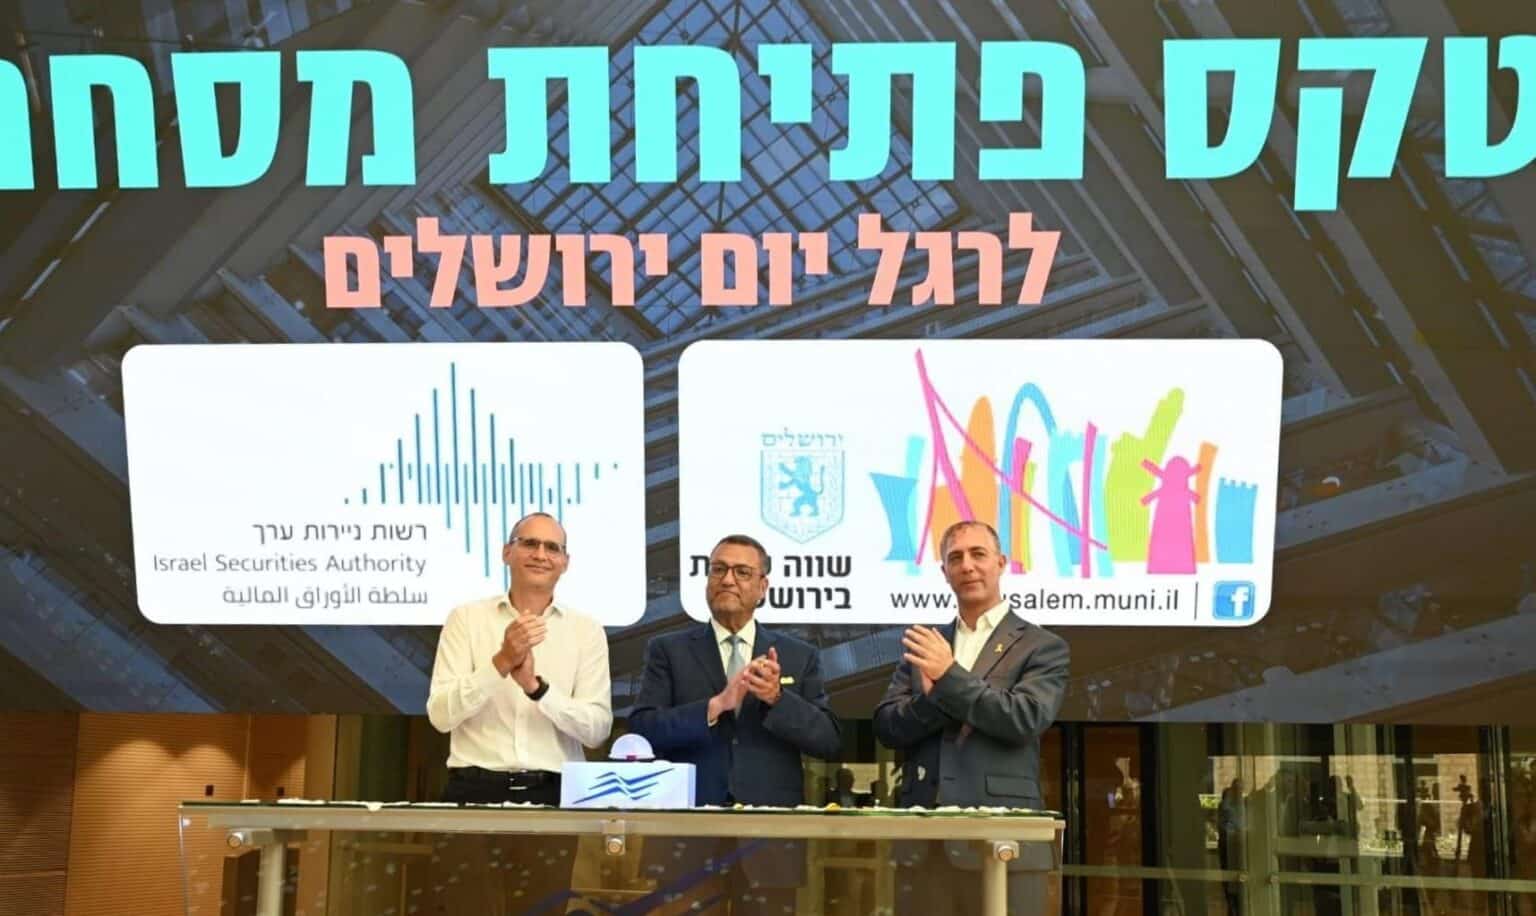 ירושלים בתל אביב: משה ליאון פתח את המסחר בבורסה לניירות ערך